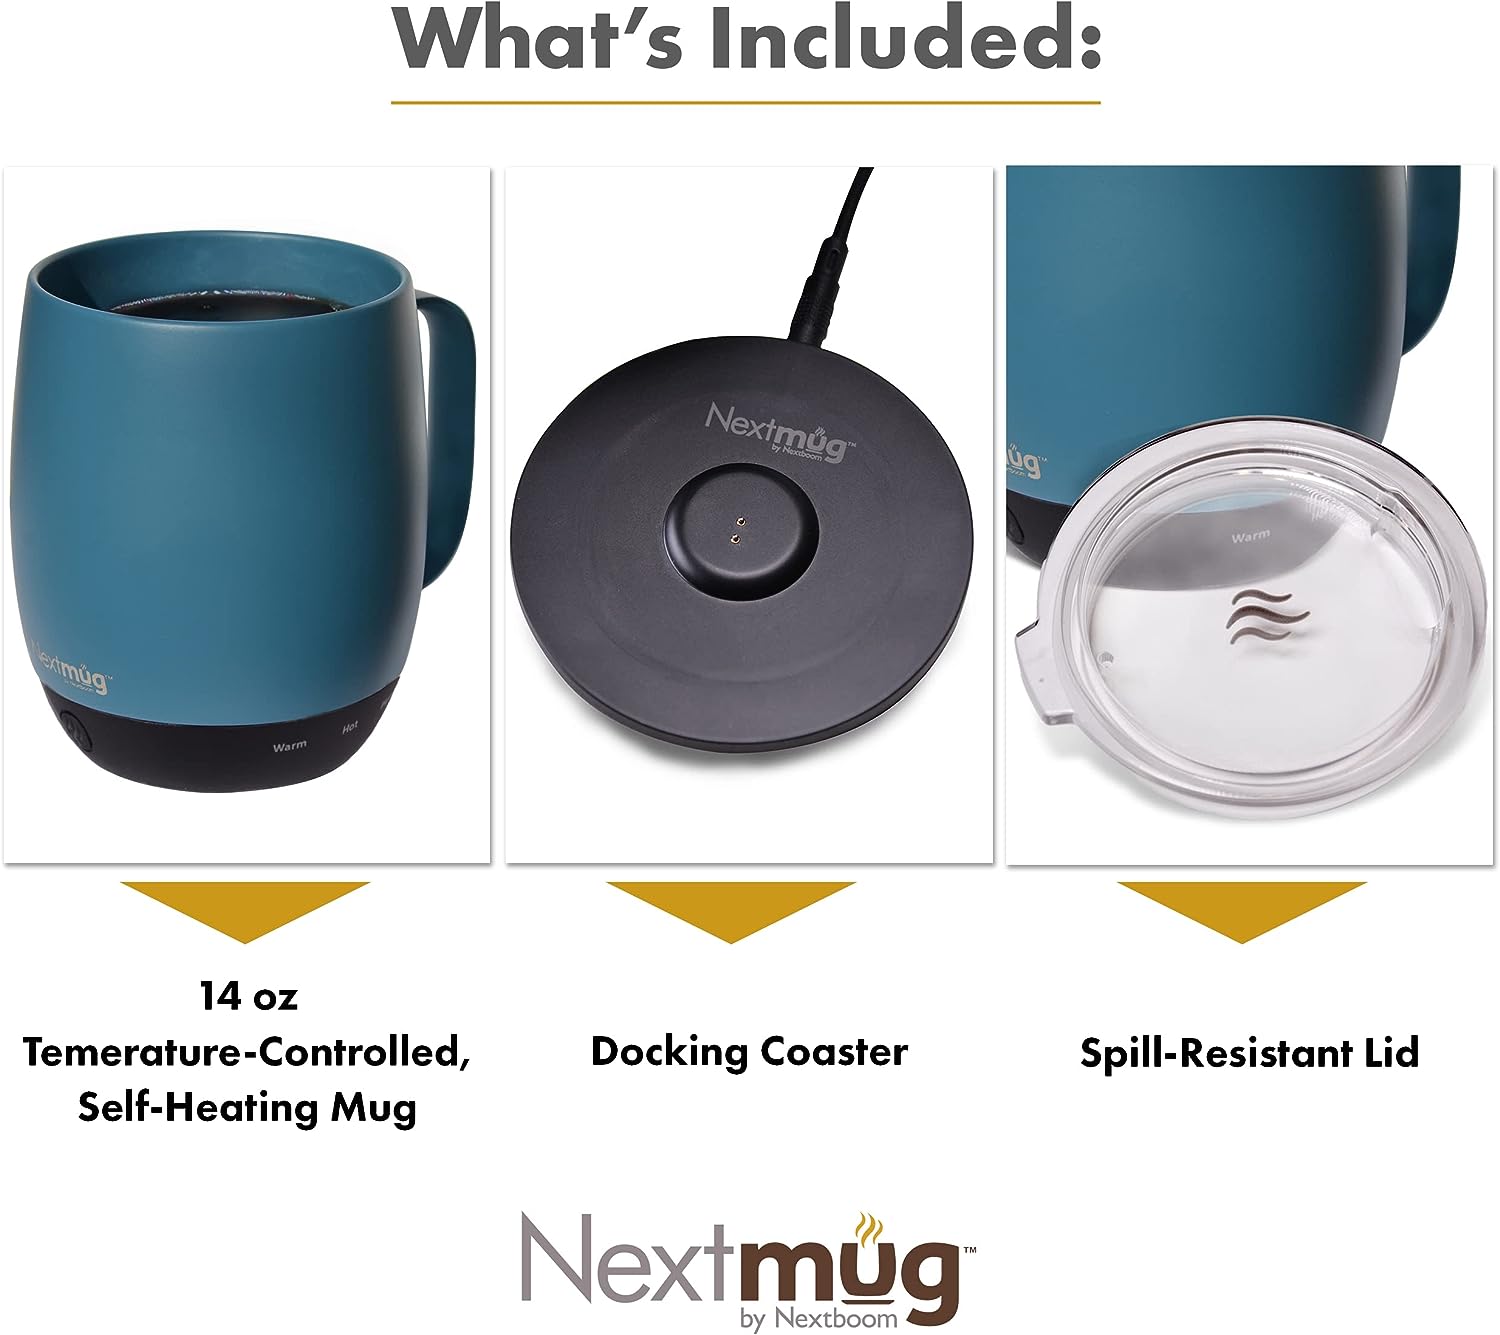 Nextmug – Temperature-Controlled Mug Review